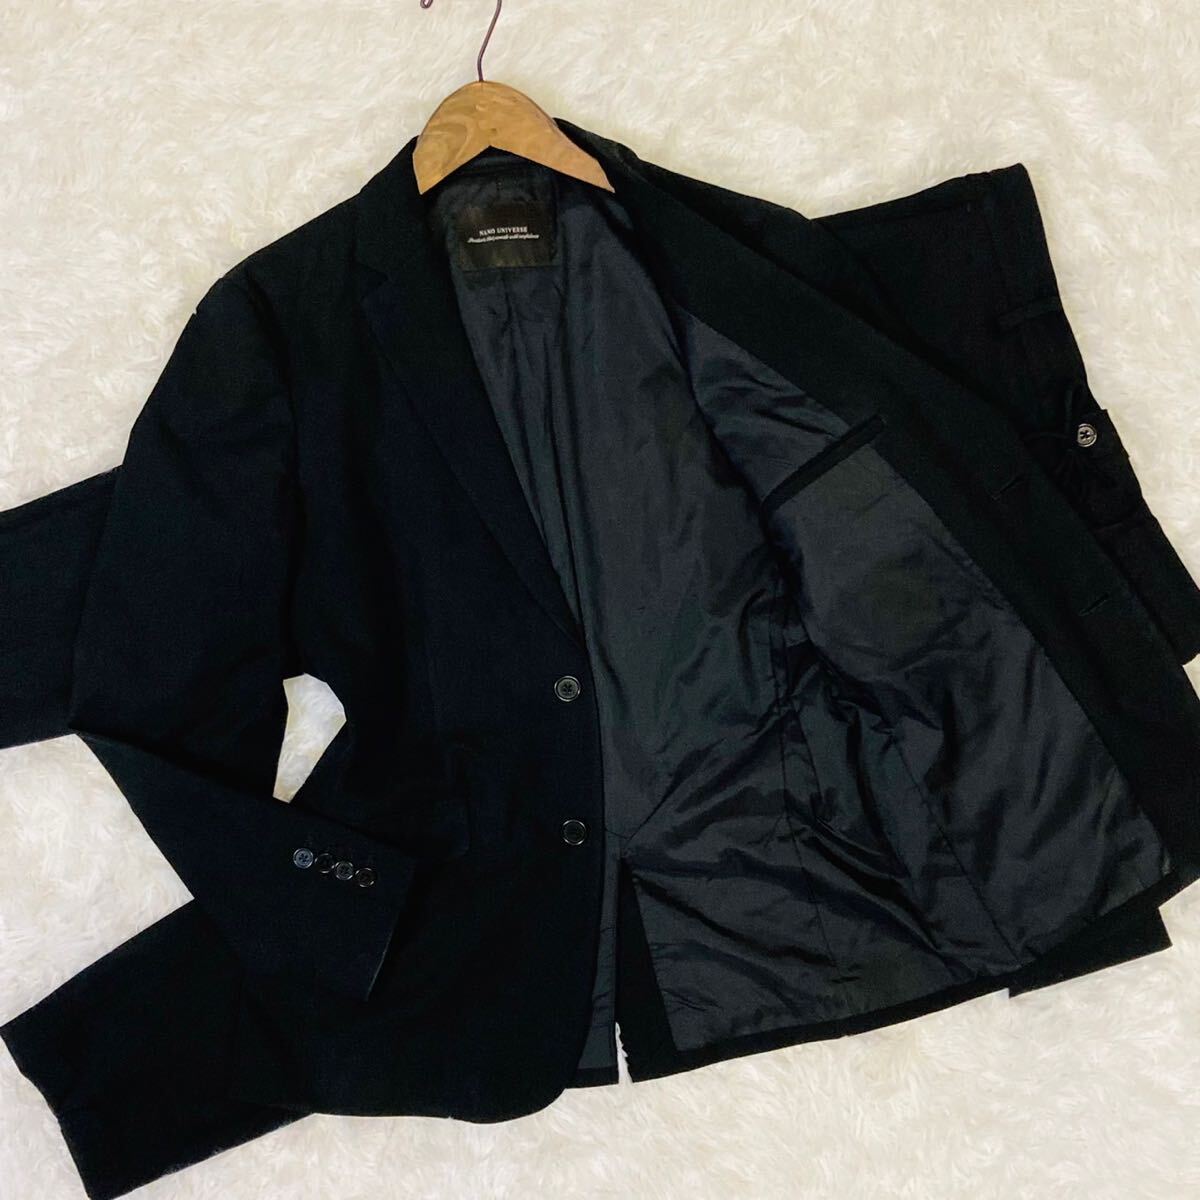 ナノユニバース セットアップ スーツ テーラードジャケット ブレザー 2B 総裏地 洗える オンオフ メンズ M ブラック 黒 NANO UNIVERSEの画像1